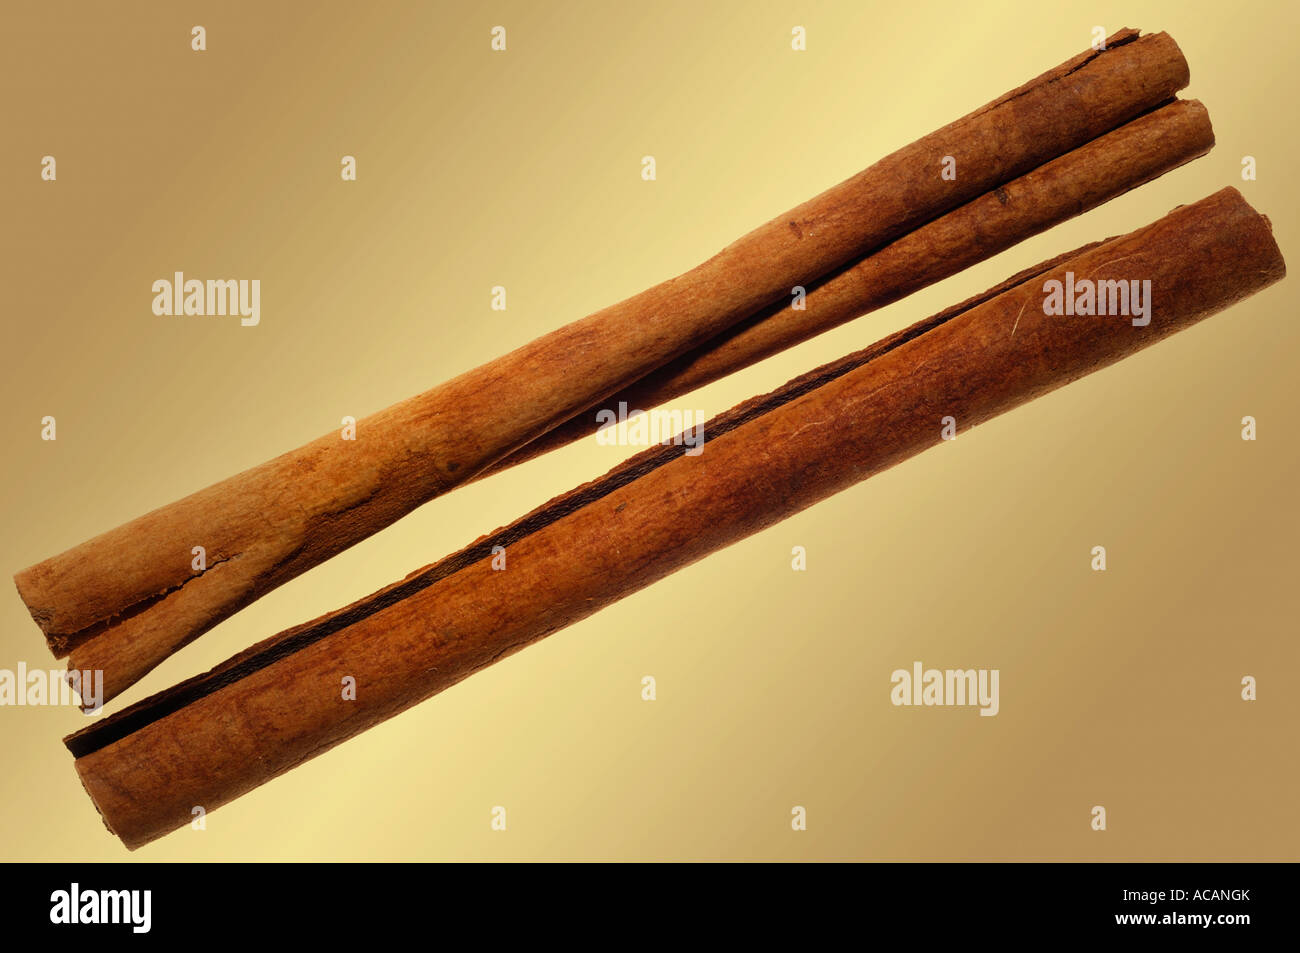 Cinnamon sticks (Cinnamonum) Stock Photo